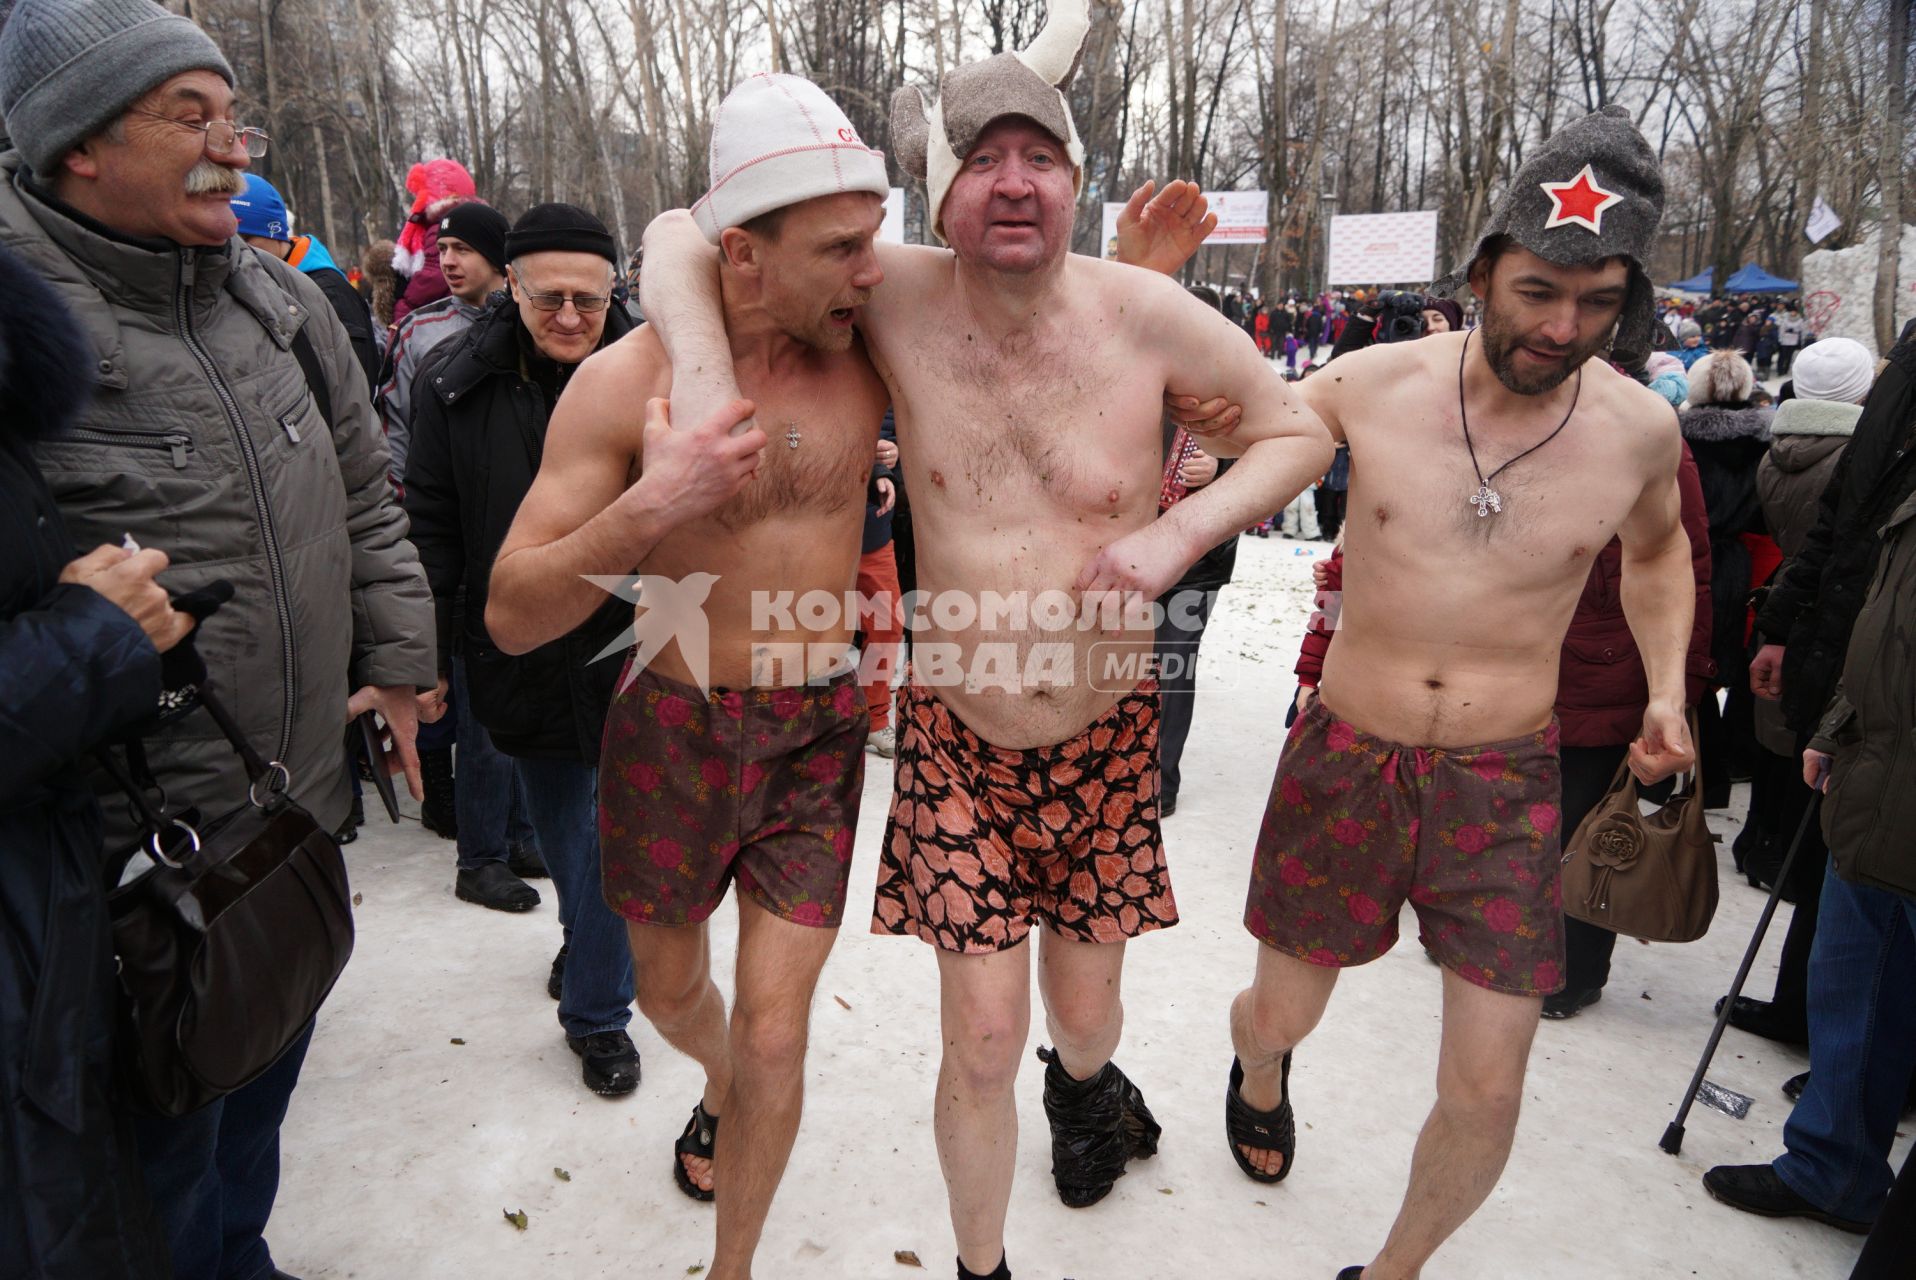 Раздетые мужчины идут греться после бани на морозе. Празднование Масленицы в Харитоновском парке, в Екатеринбурге